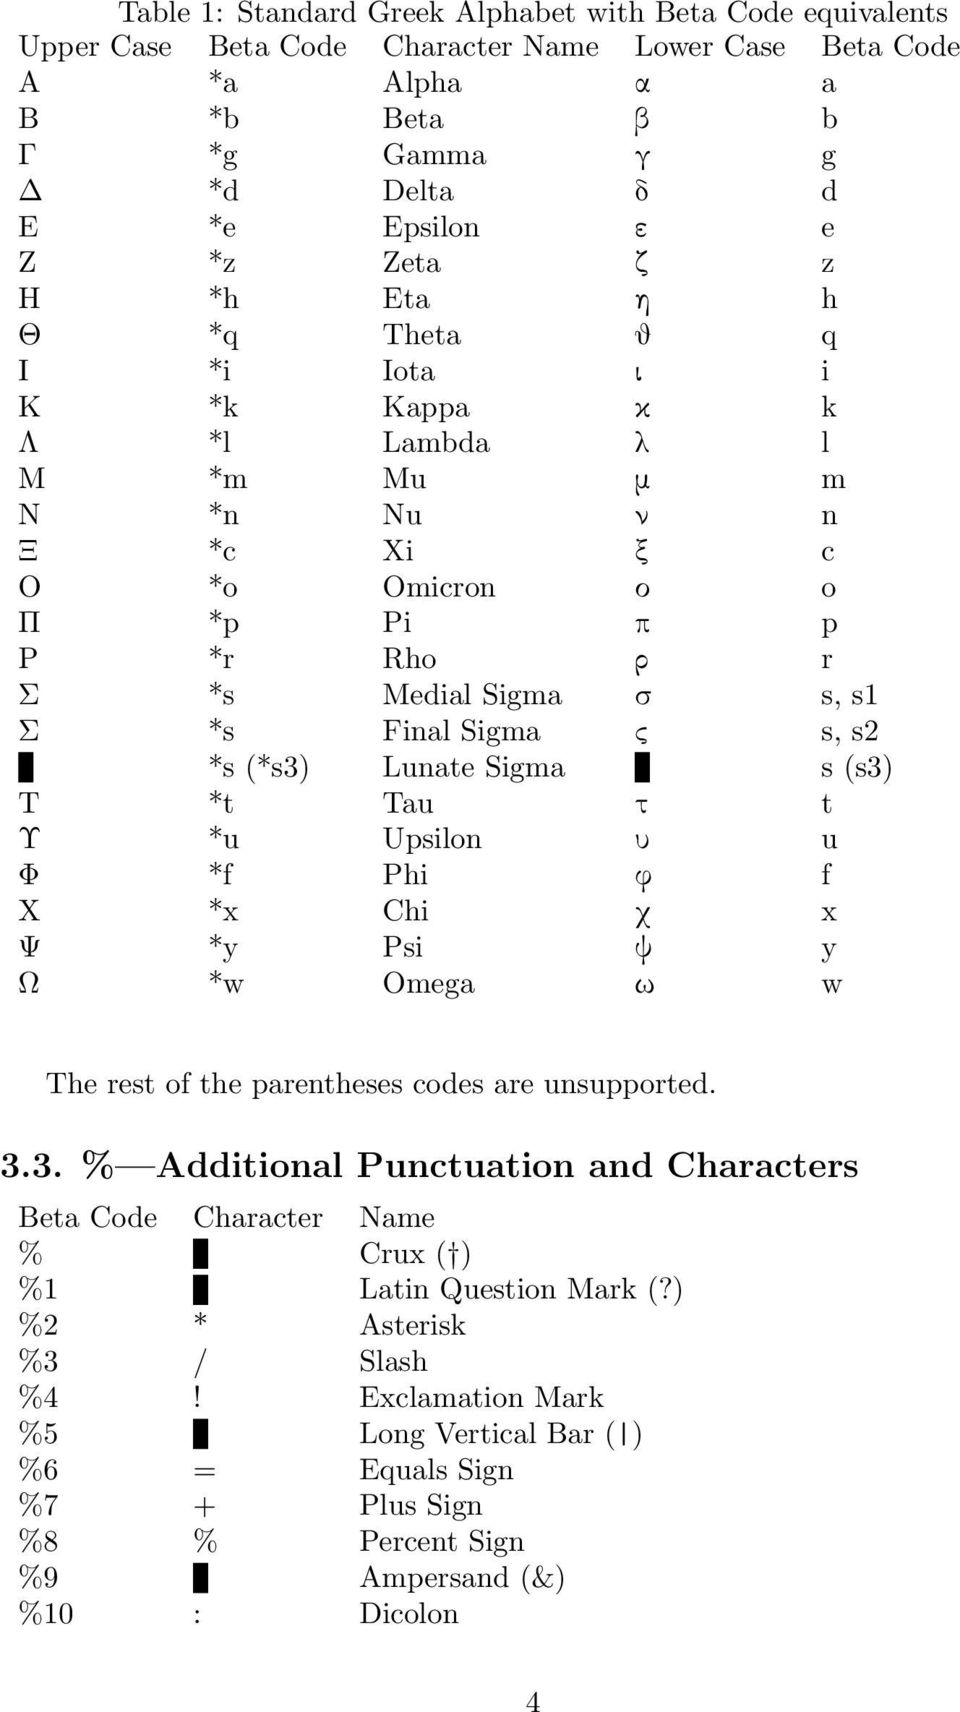 Sigma ς s, s2 *s (*s3) Lunate Sigma s (s3) Τ *t Tau τ t Υ *u Upsilon υ u Φ *f Phi φ f Χ *x Chi χ x Ψ *y Psi ψ y Ω *w Omega ω w The rest of the parentheses codes are unsupported. 3.3. % Additional Punctuation and Characters Beta Code Character Name % Crux ( ) %1 Latin Question Mark (?